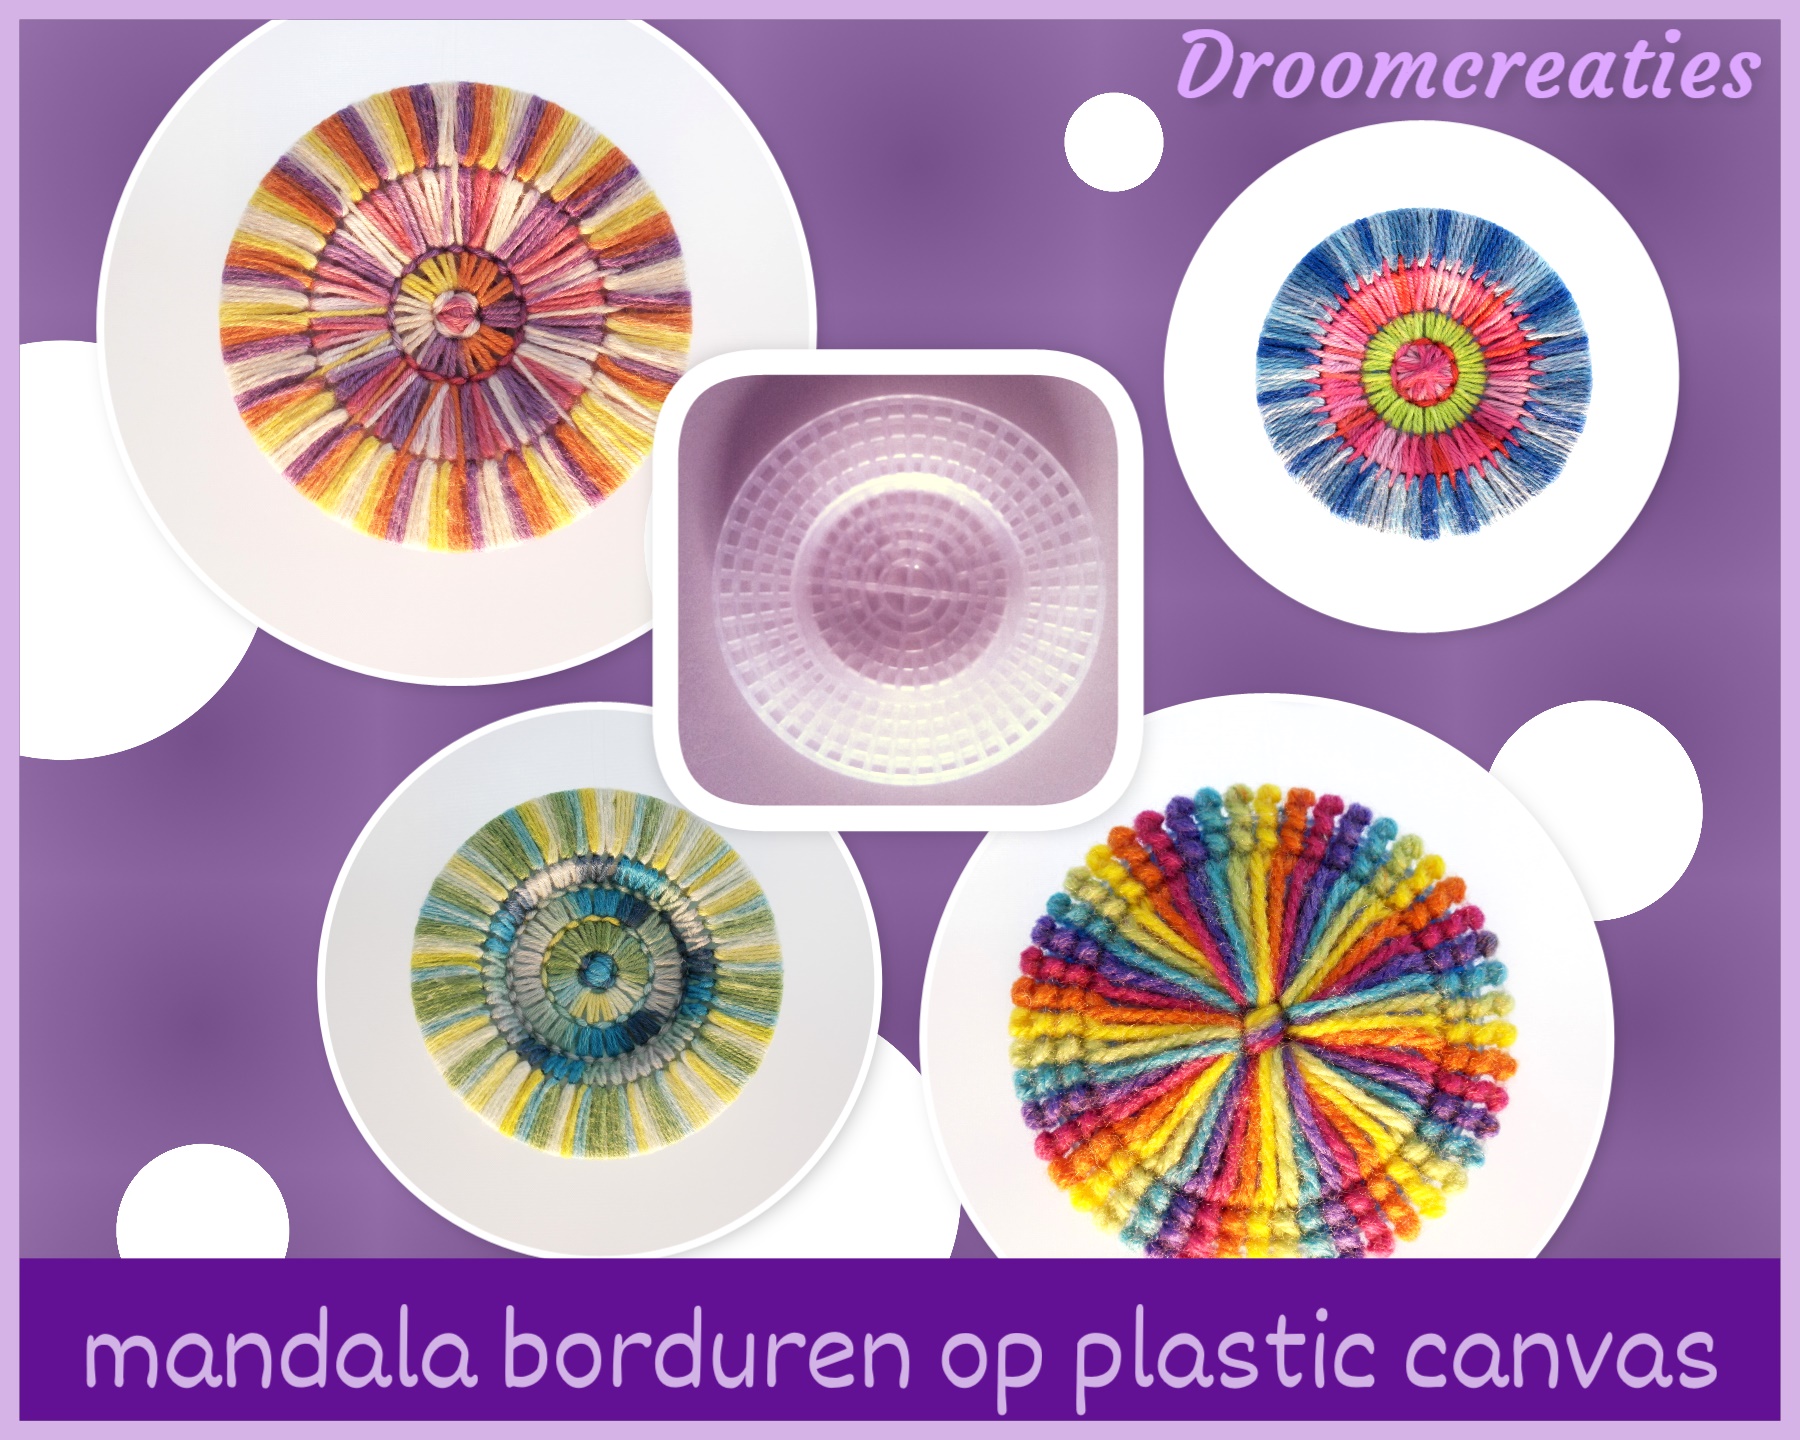 redden Incarijk campagne Inspiratie tip ~ plastic canvas borduren - Mandalashop Droomcreaties